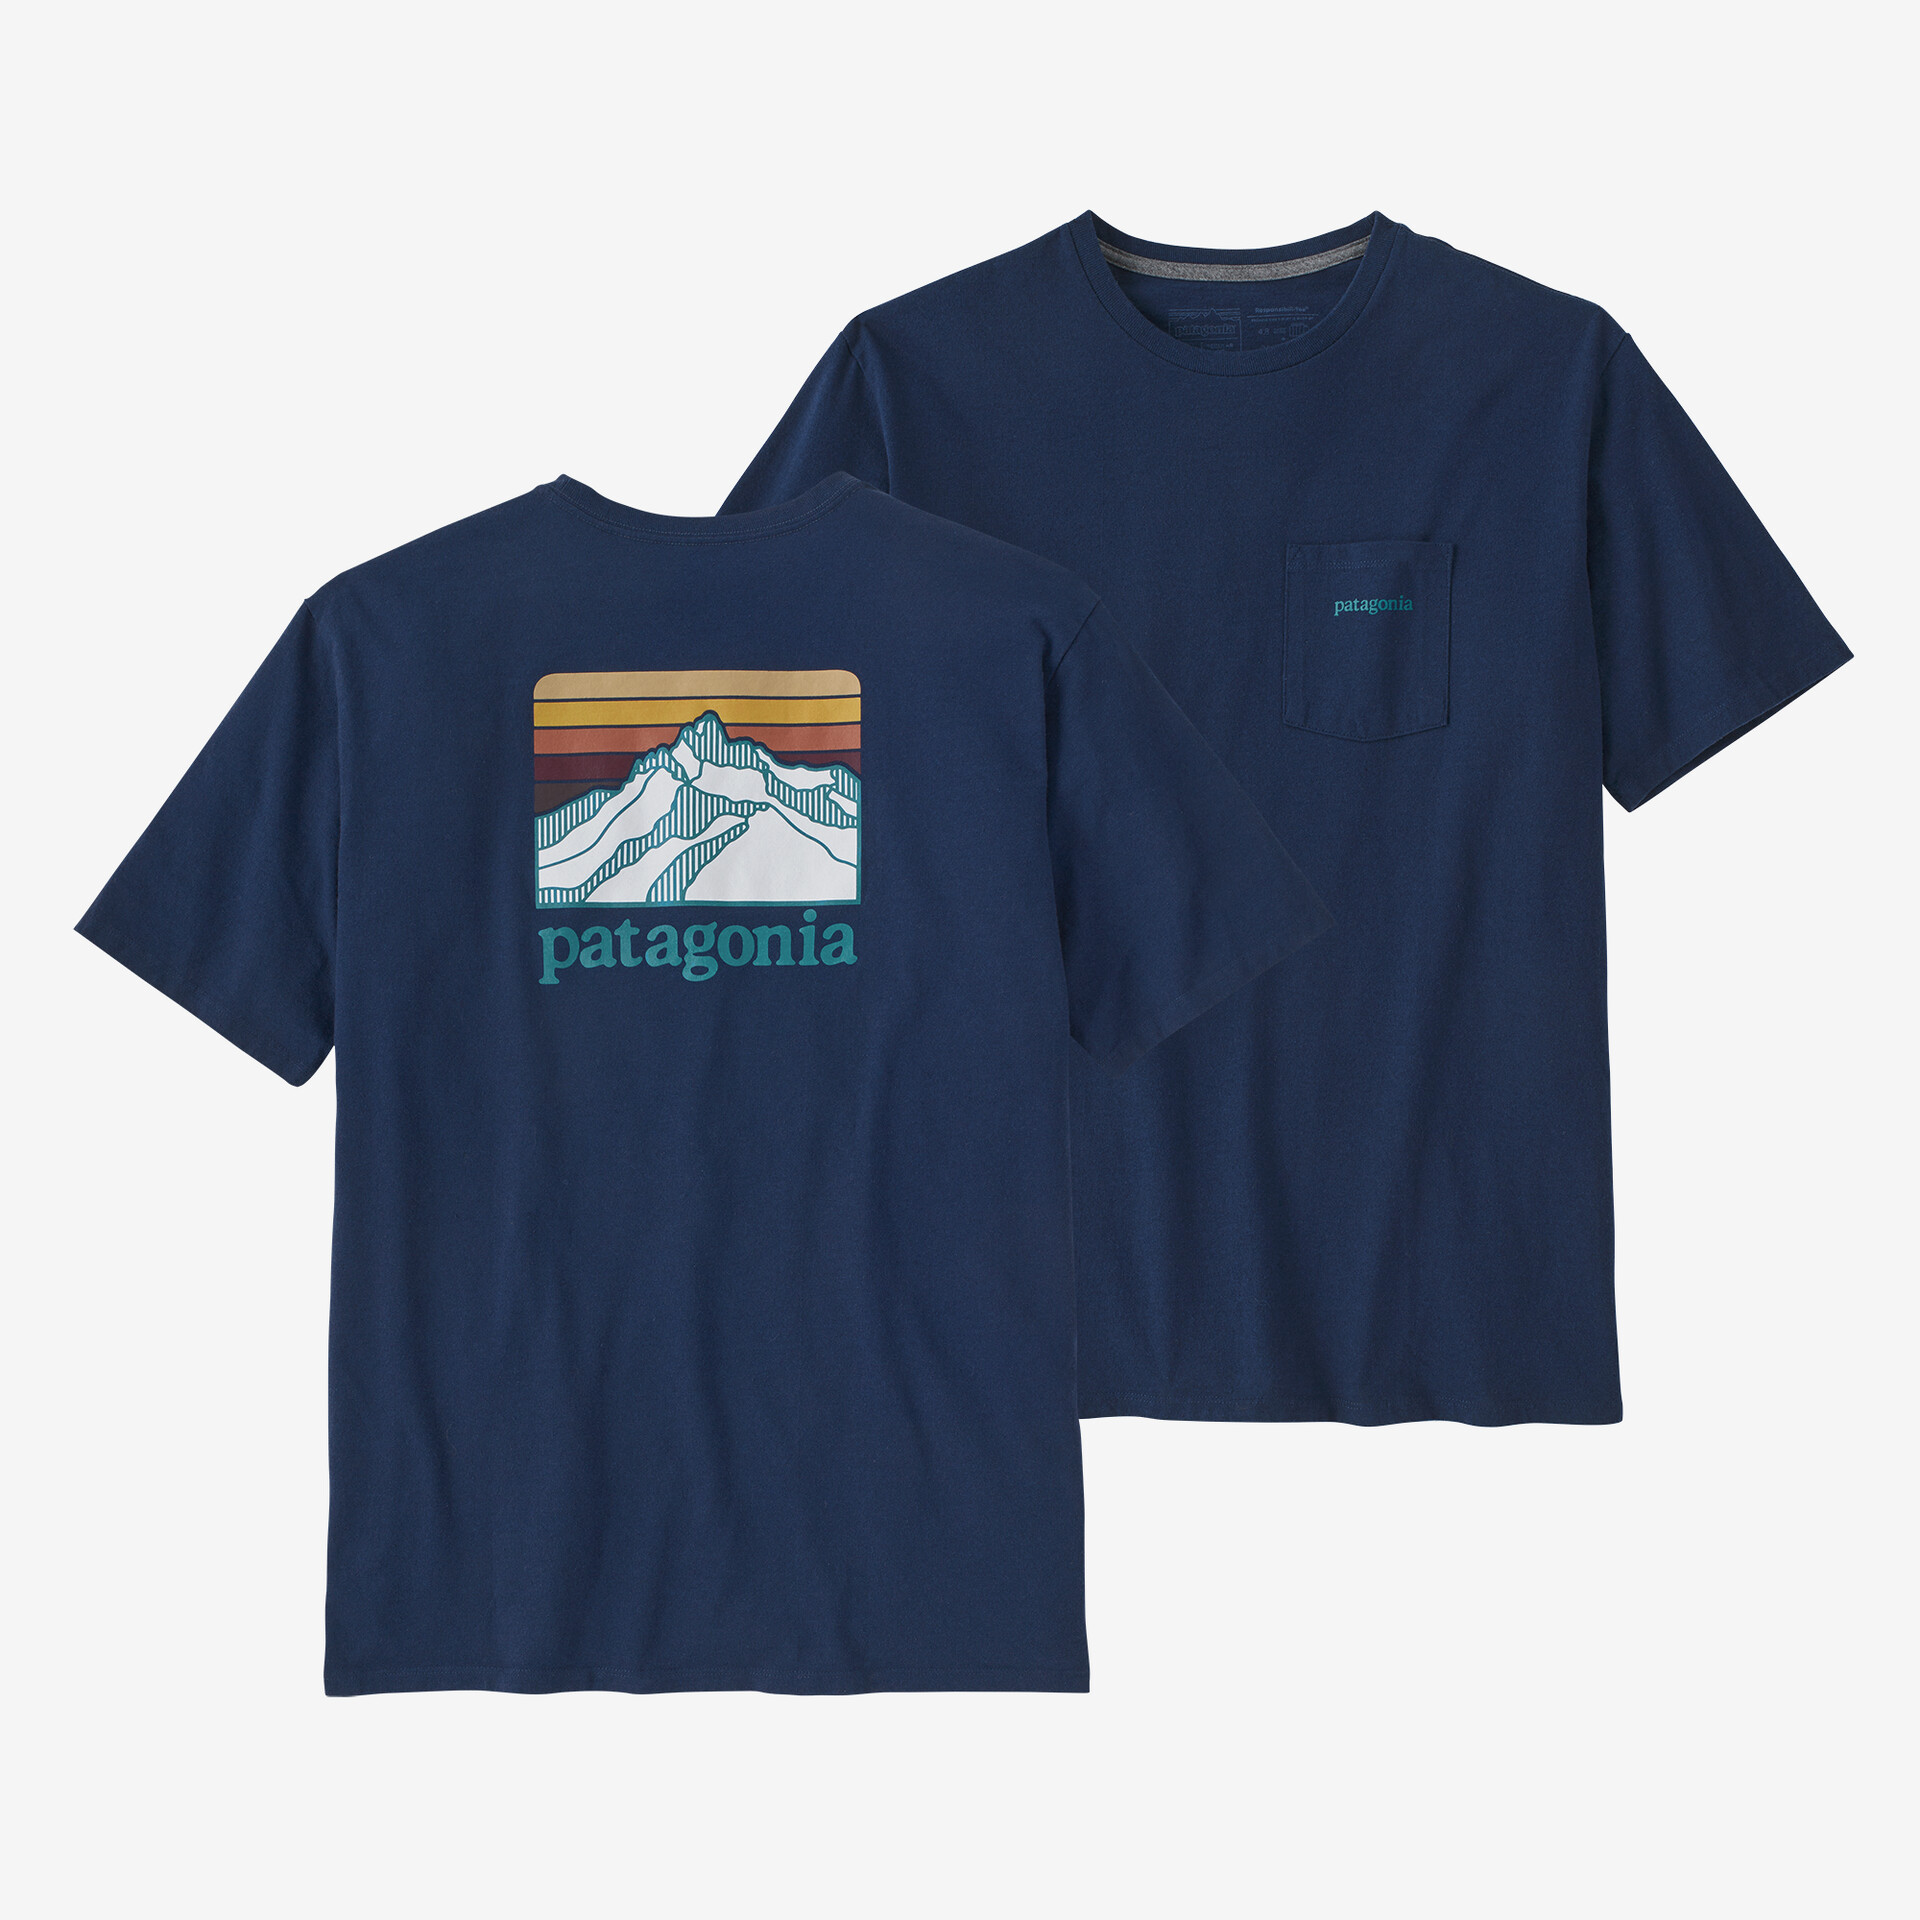 Мужская ответственная футболка с логотипом и карманом Patagonia, лагом синий